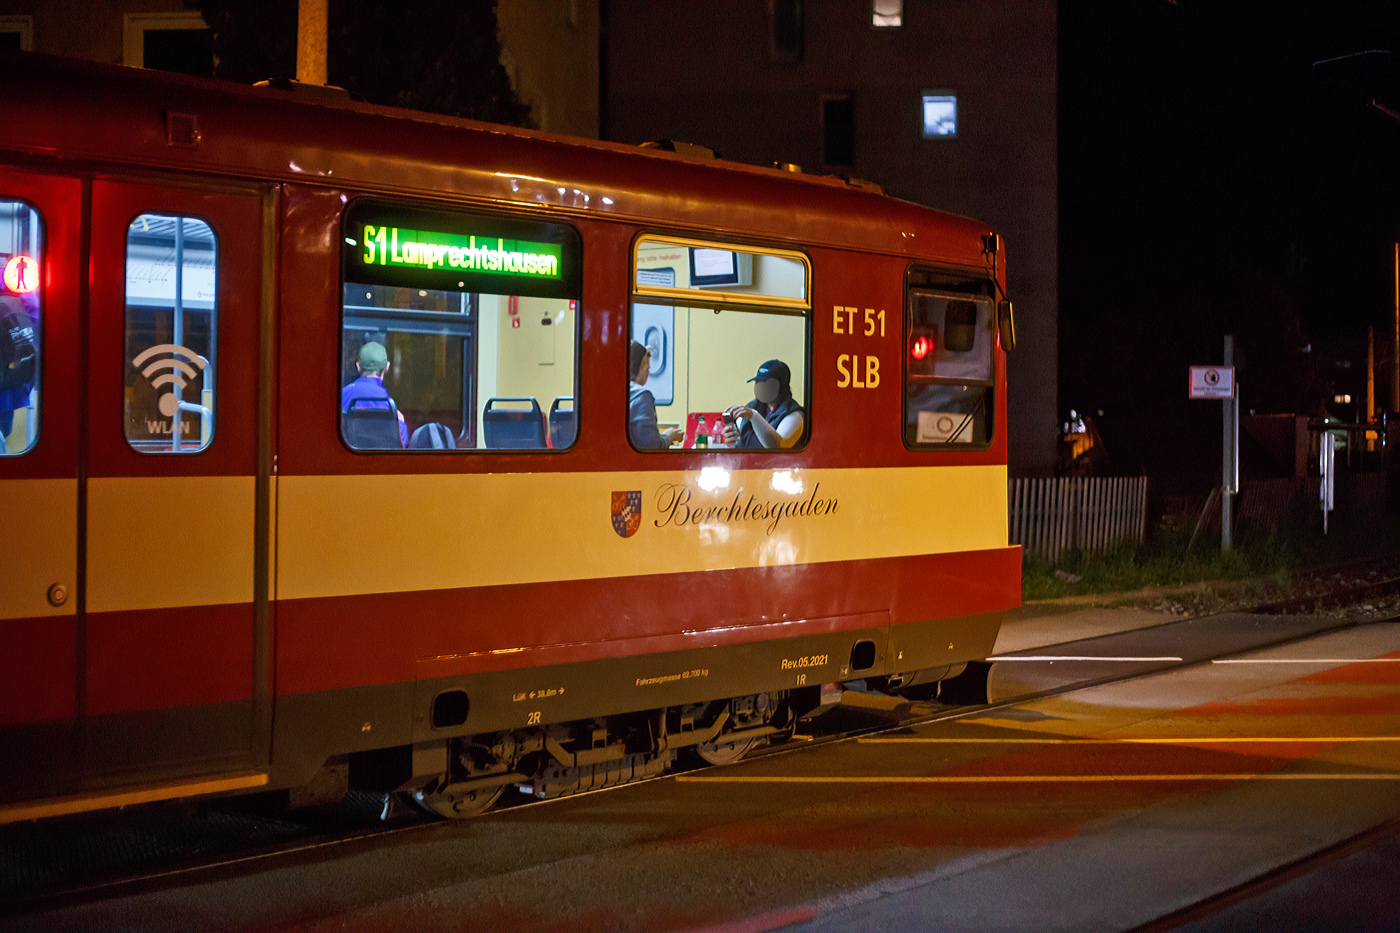 Detailbild:
Der ET 51 „Berchtesgaden“ (Baujahr 1992) der SLB - Salzburger Lokalbahn hat am späten Abend des 12.09.2022 (21 Uhr) den Lokalbahnhof Salzburg verlassen  und fährt als S1 nach Lamprechtshausen, hier überquert er gerade die Fanny-von-Lehnert-Straße (Bü).
